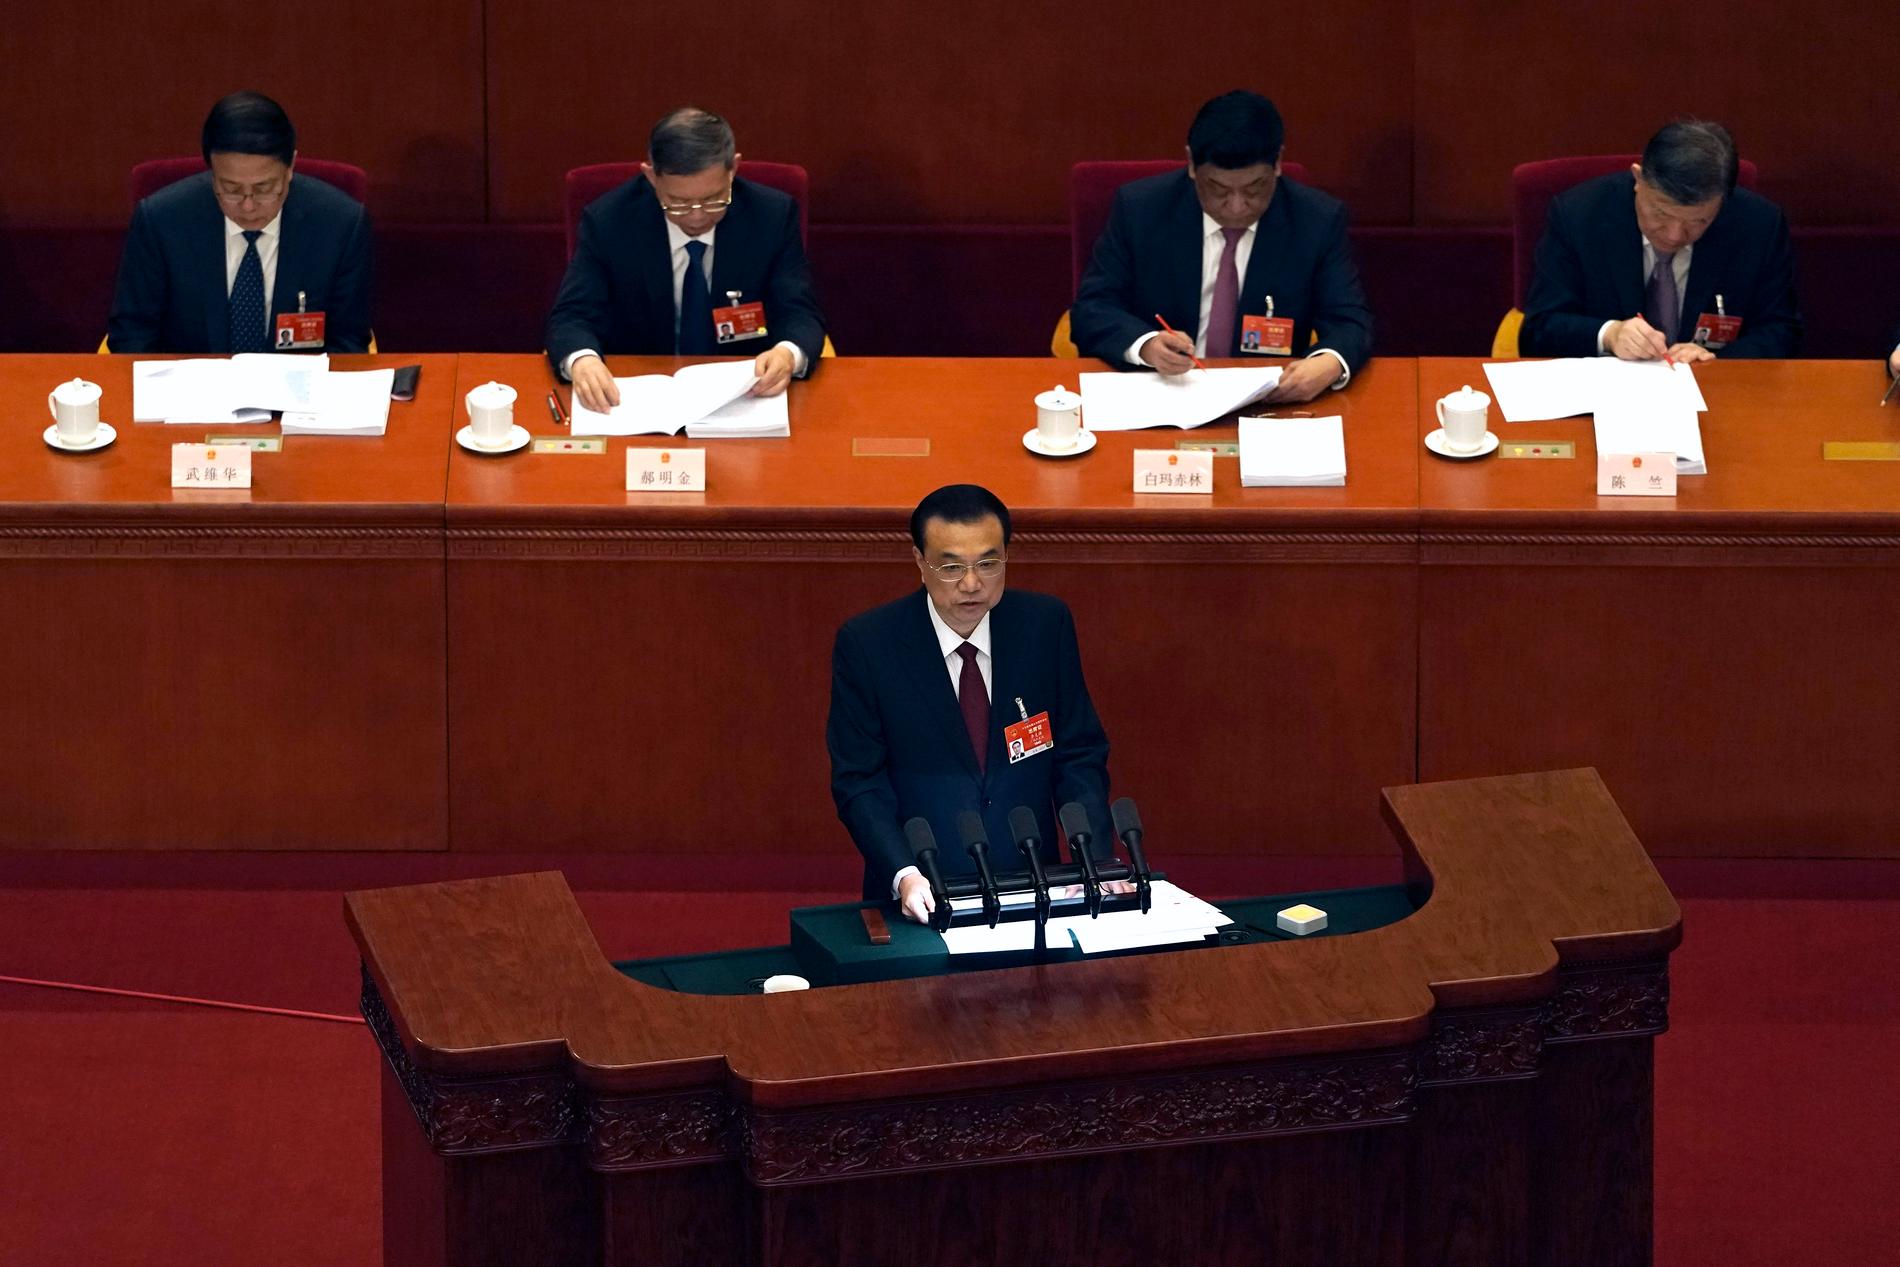 Kinas premiärminister Li Keqiang talade då folkkongressen inleddes.